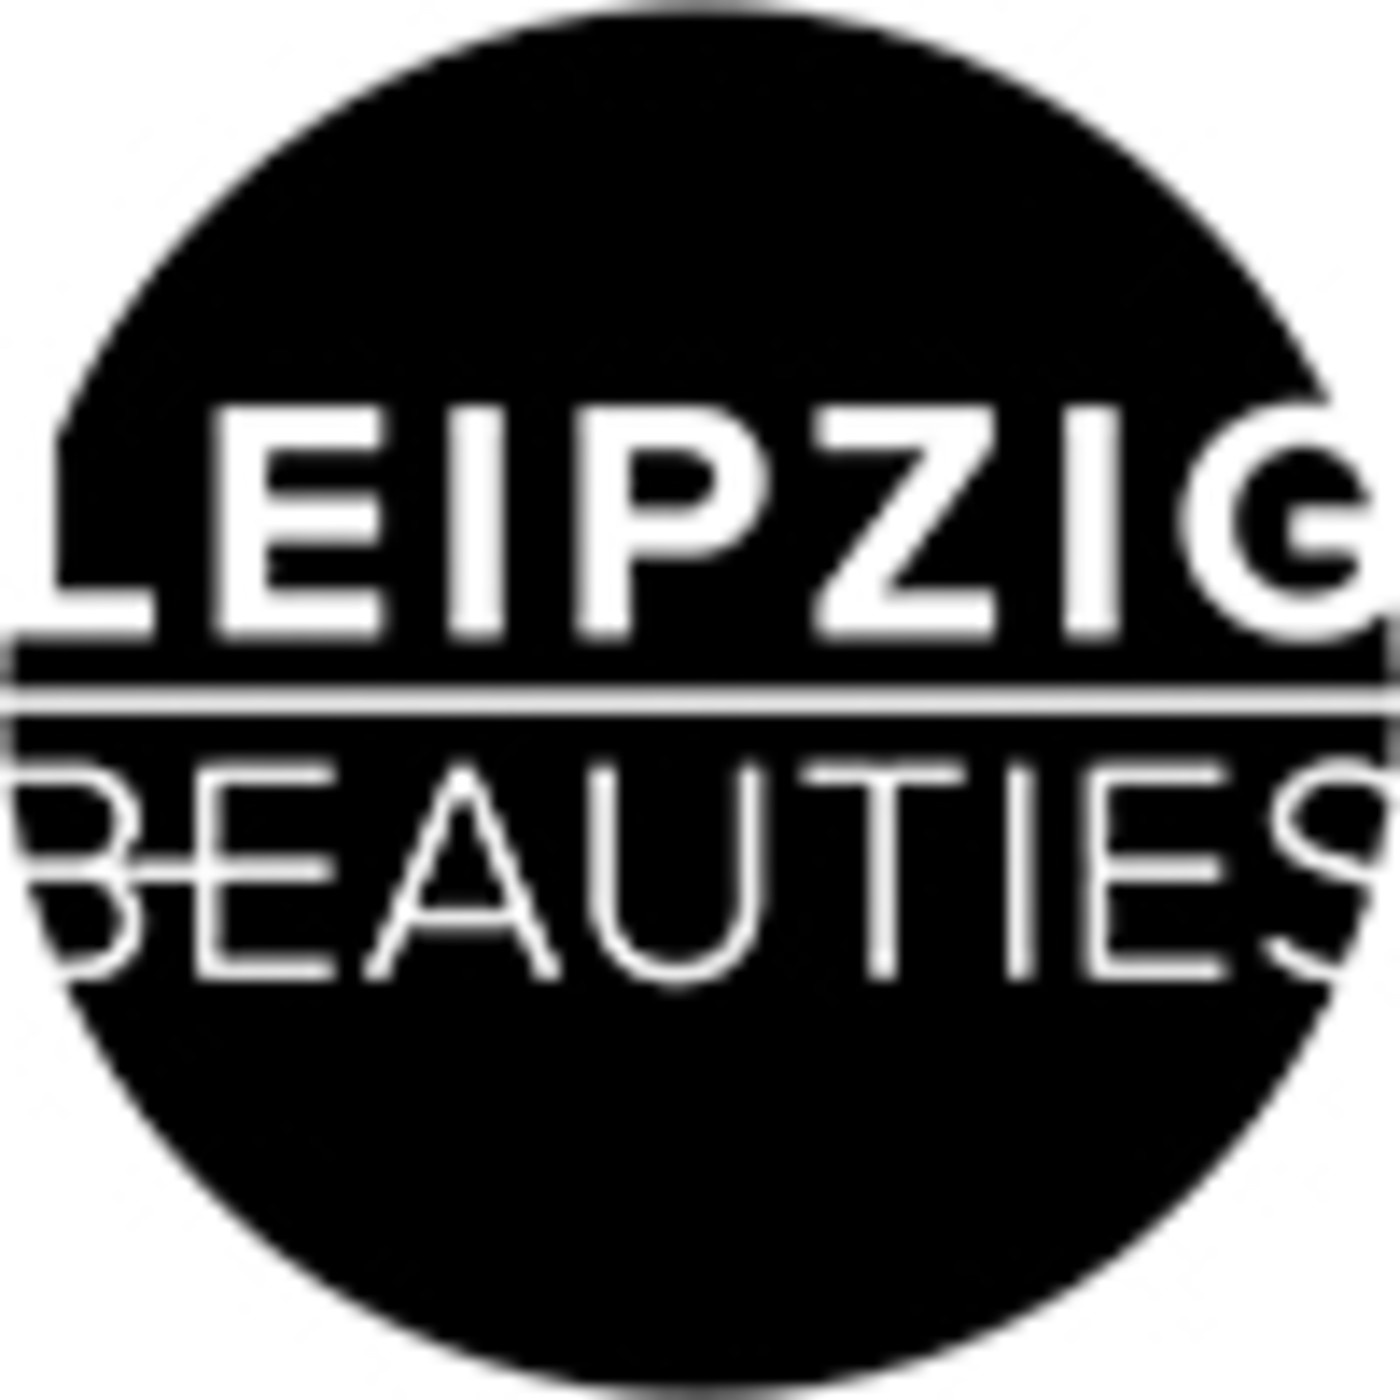 Leipzig Beauties